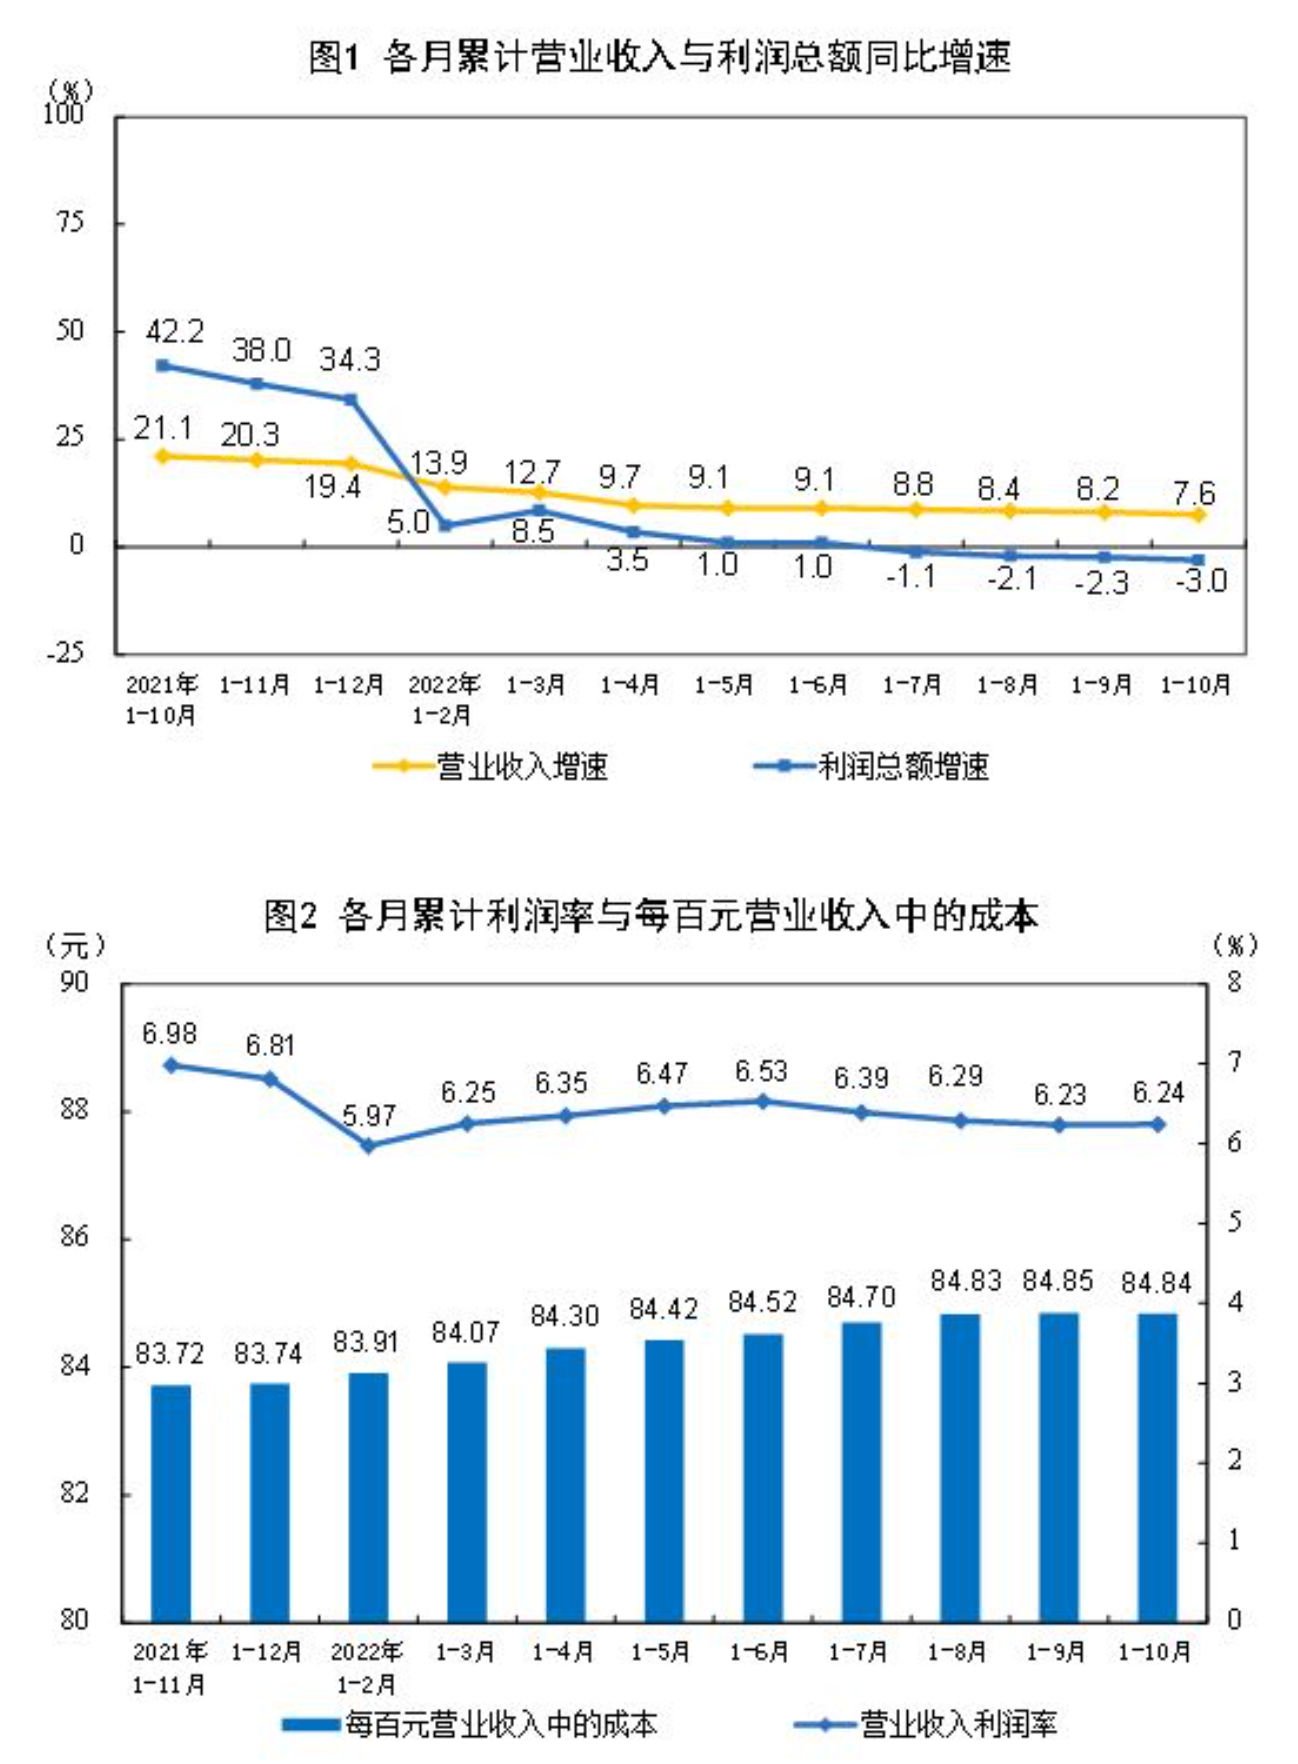 1-10月中国全国规模以上工业企业利润同比下降3.0%